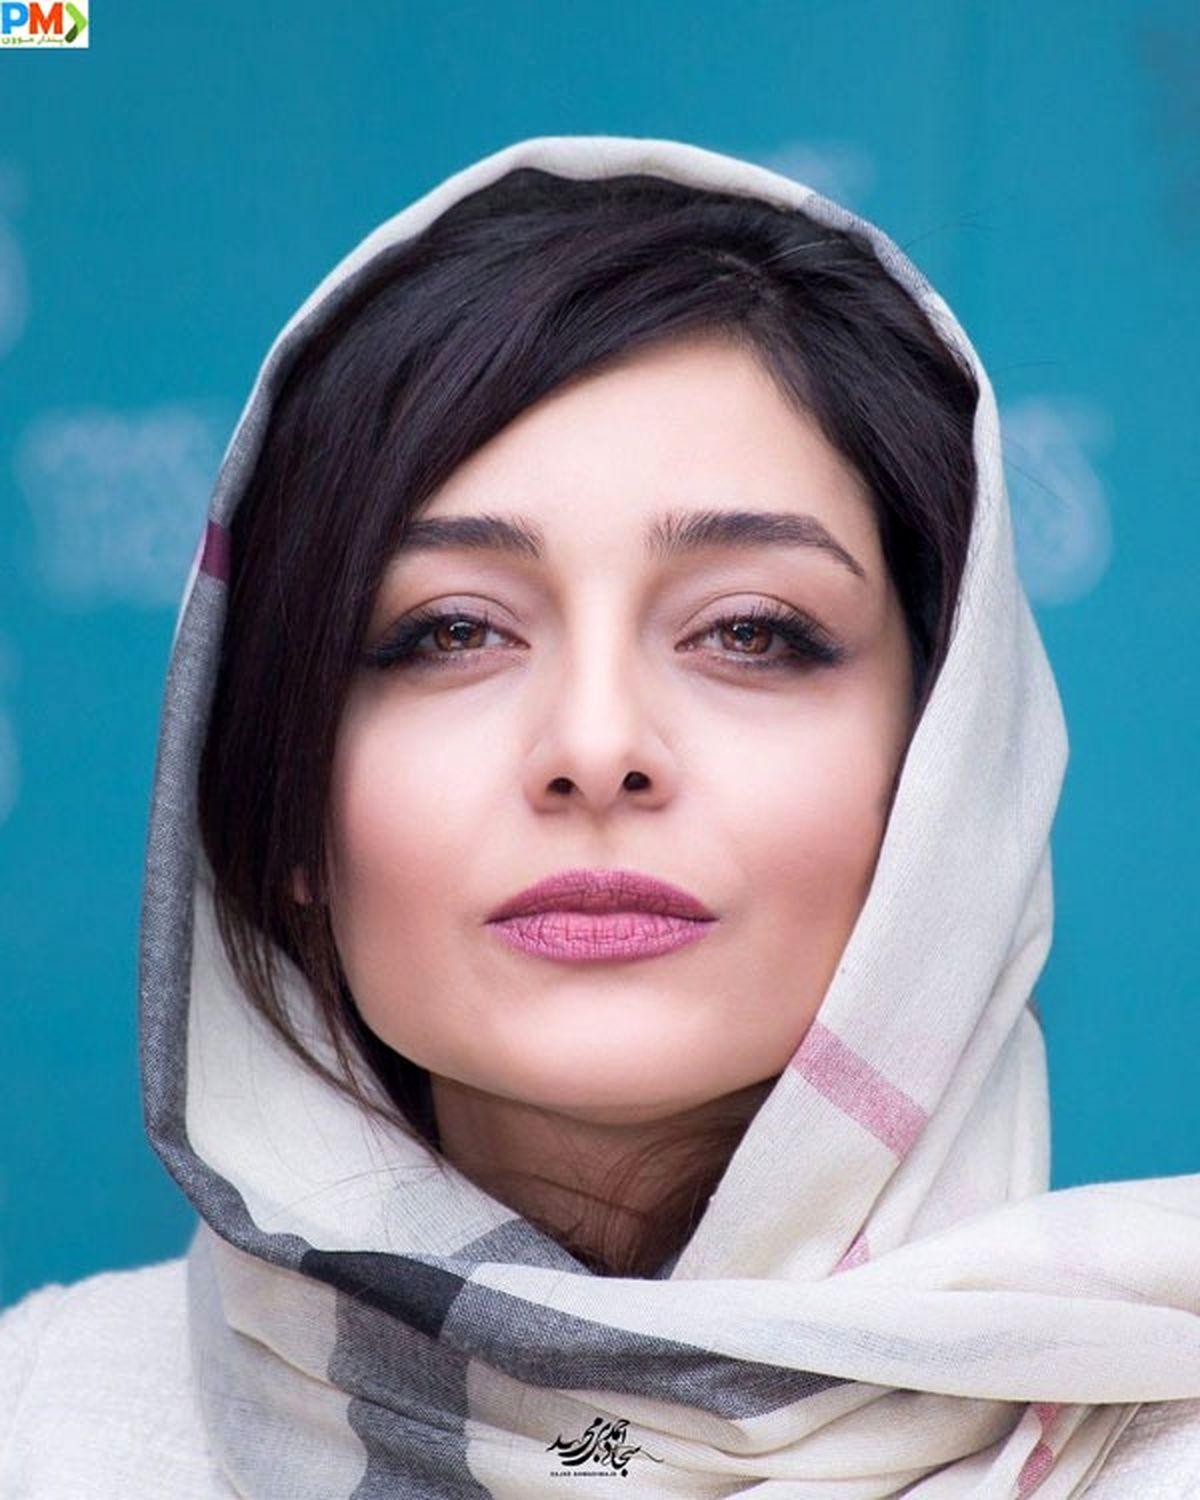 چهره متفاوت ساره بیات در مراسم تحریم بیتا فرهی که باعث تعجب همه شد+ تصویر